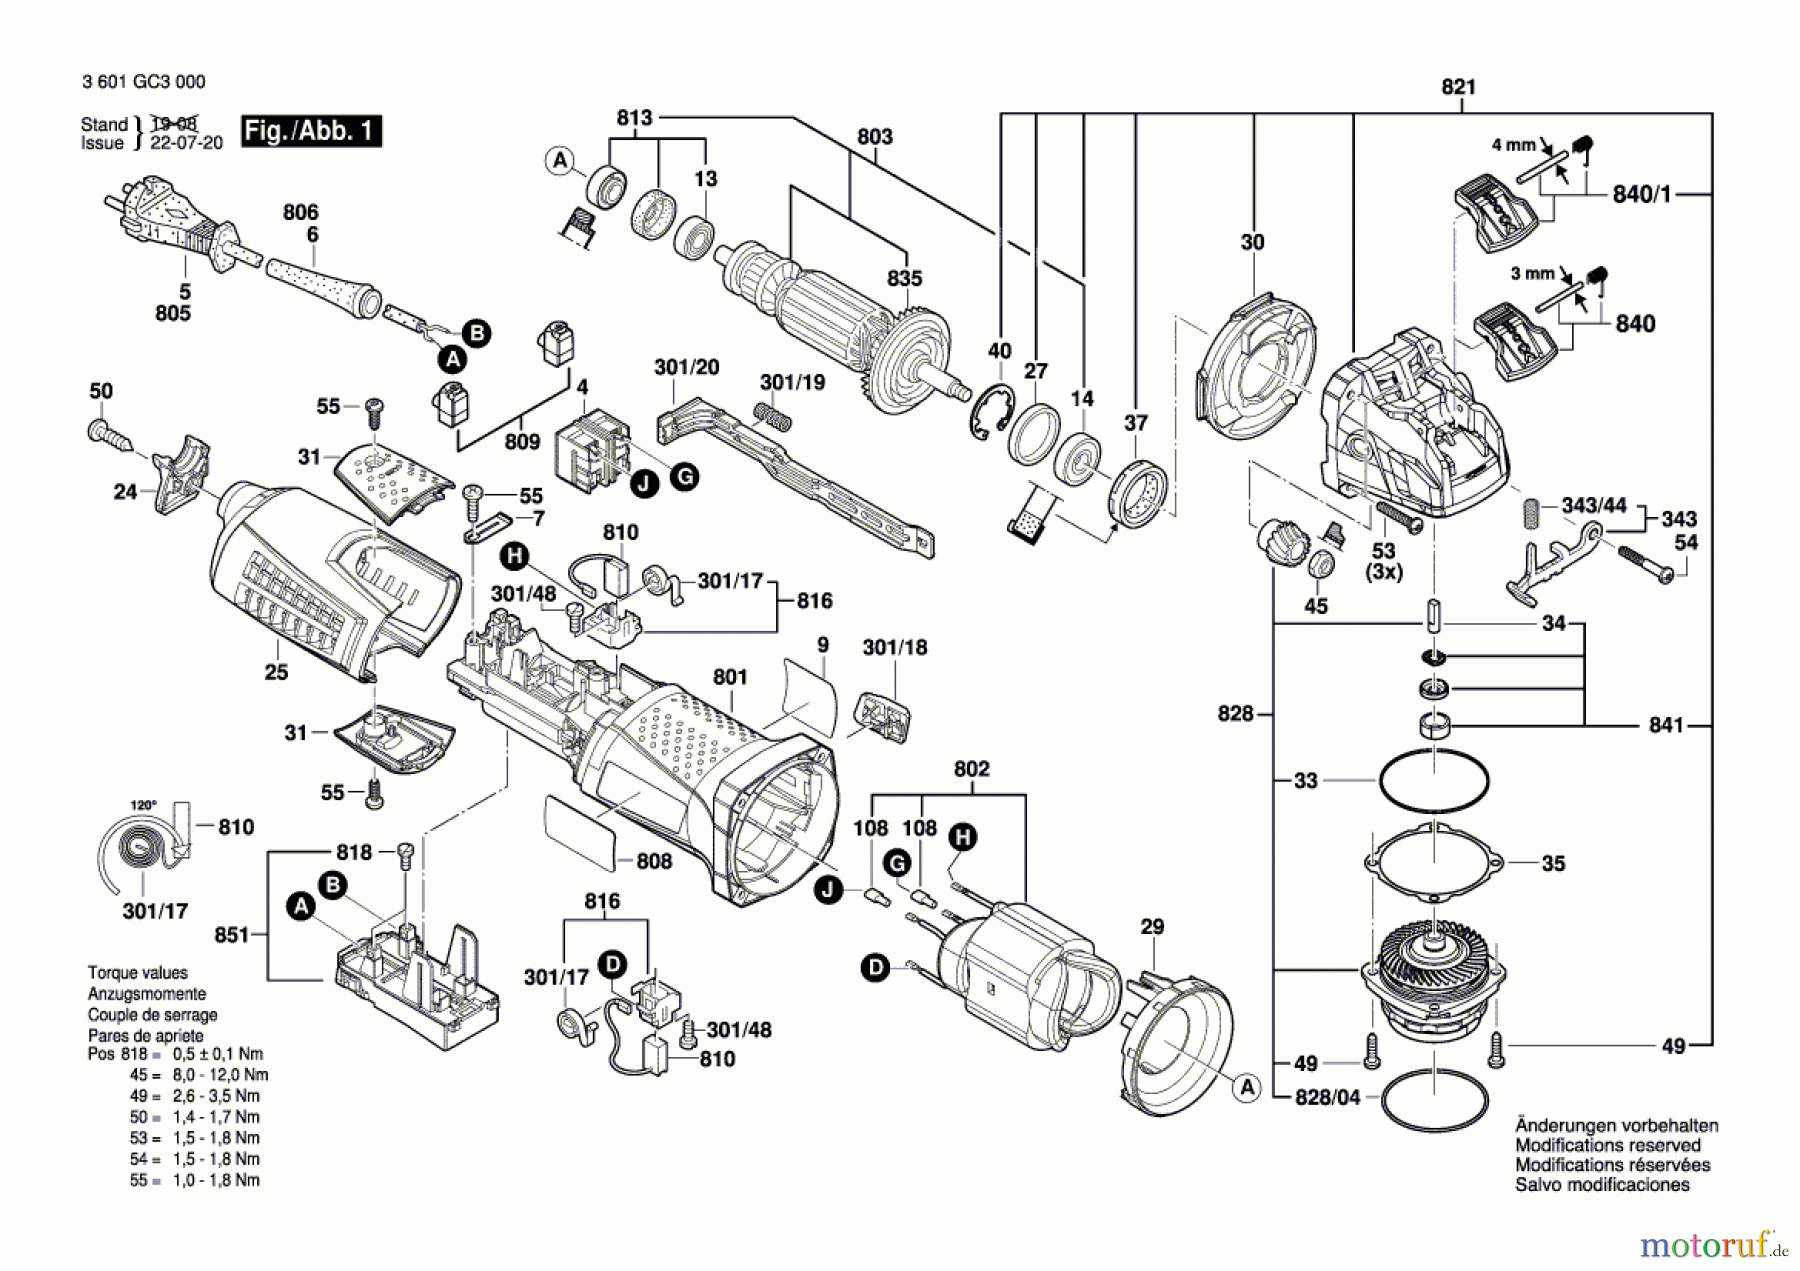  Bosch Werkzeug Winkelschleifer GWX 17-125 Seite 1